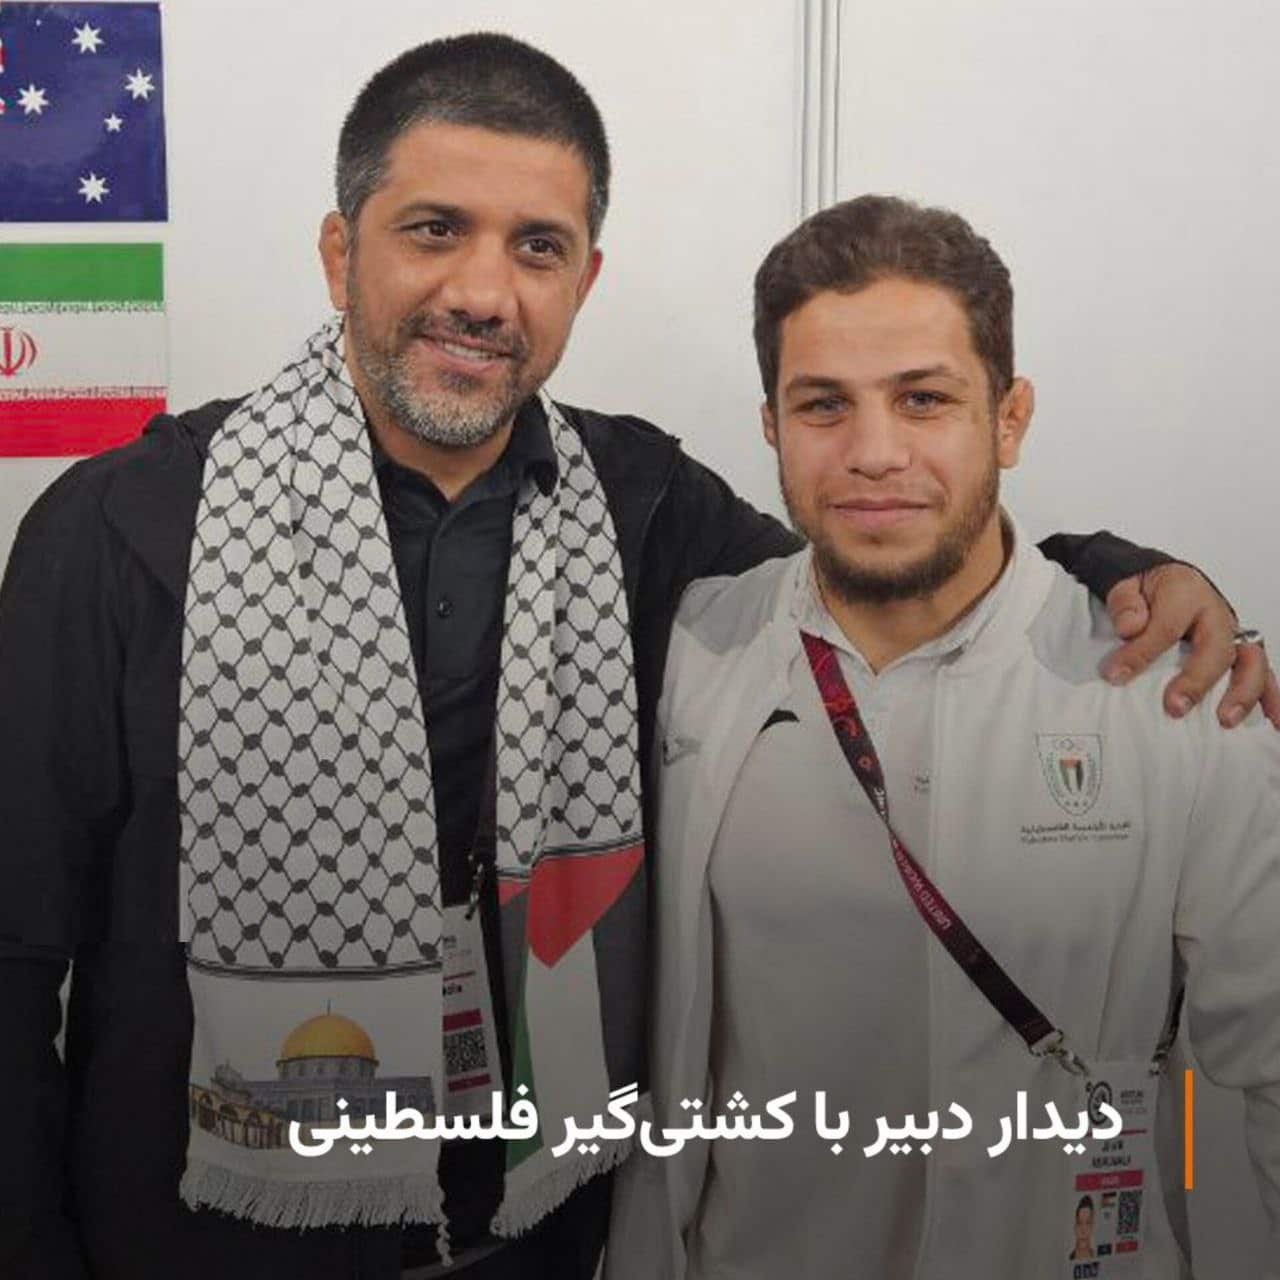 عکس دیدار علیرضا دبیر با یک مبارز فلسطینی